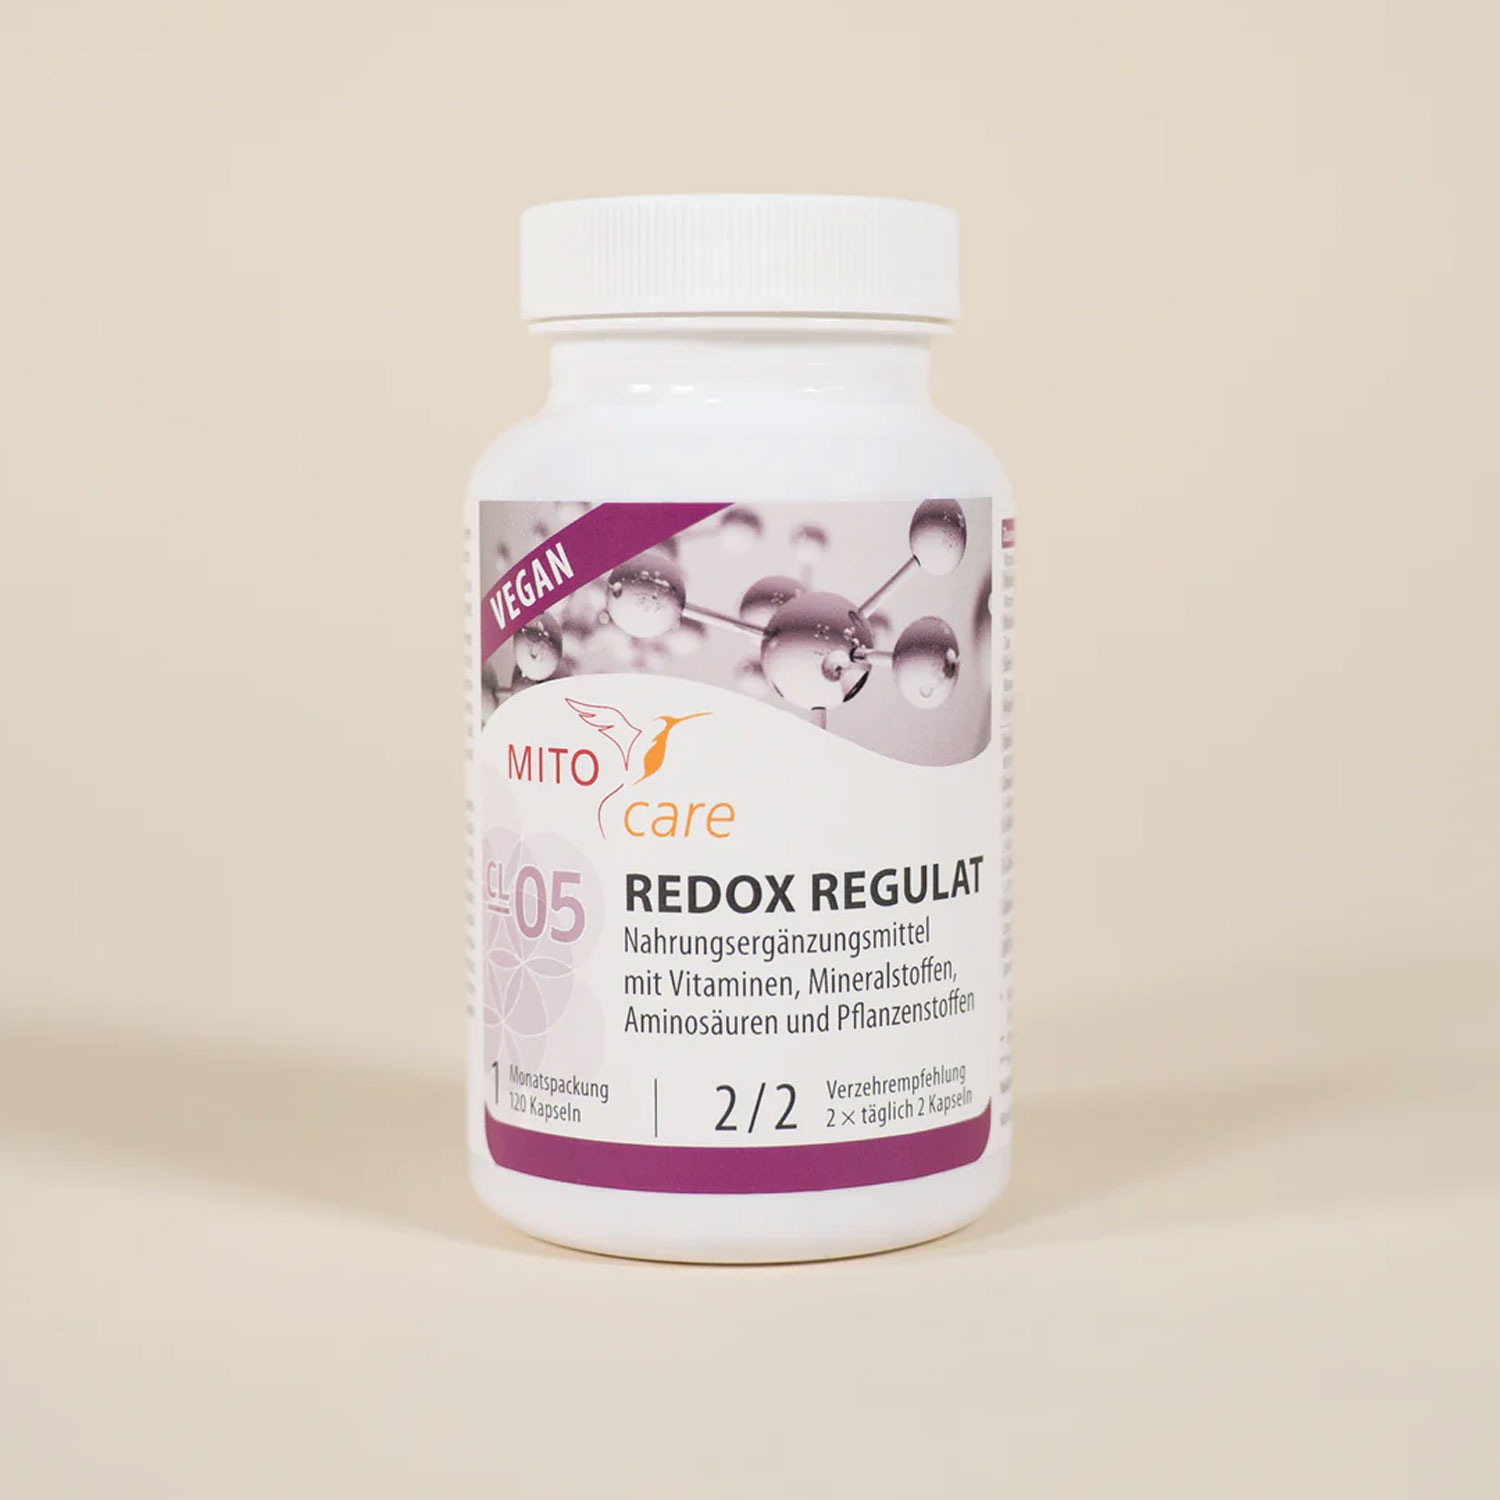 MITOcare® REDOX REGULAT - Dose Etikett vorn